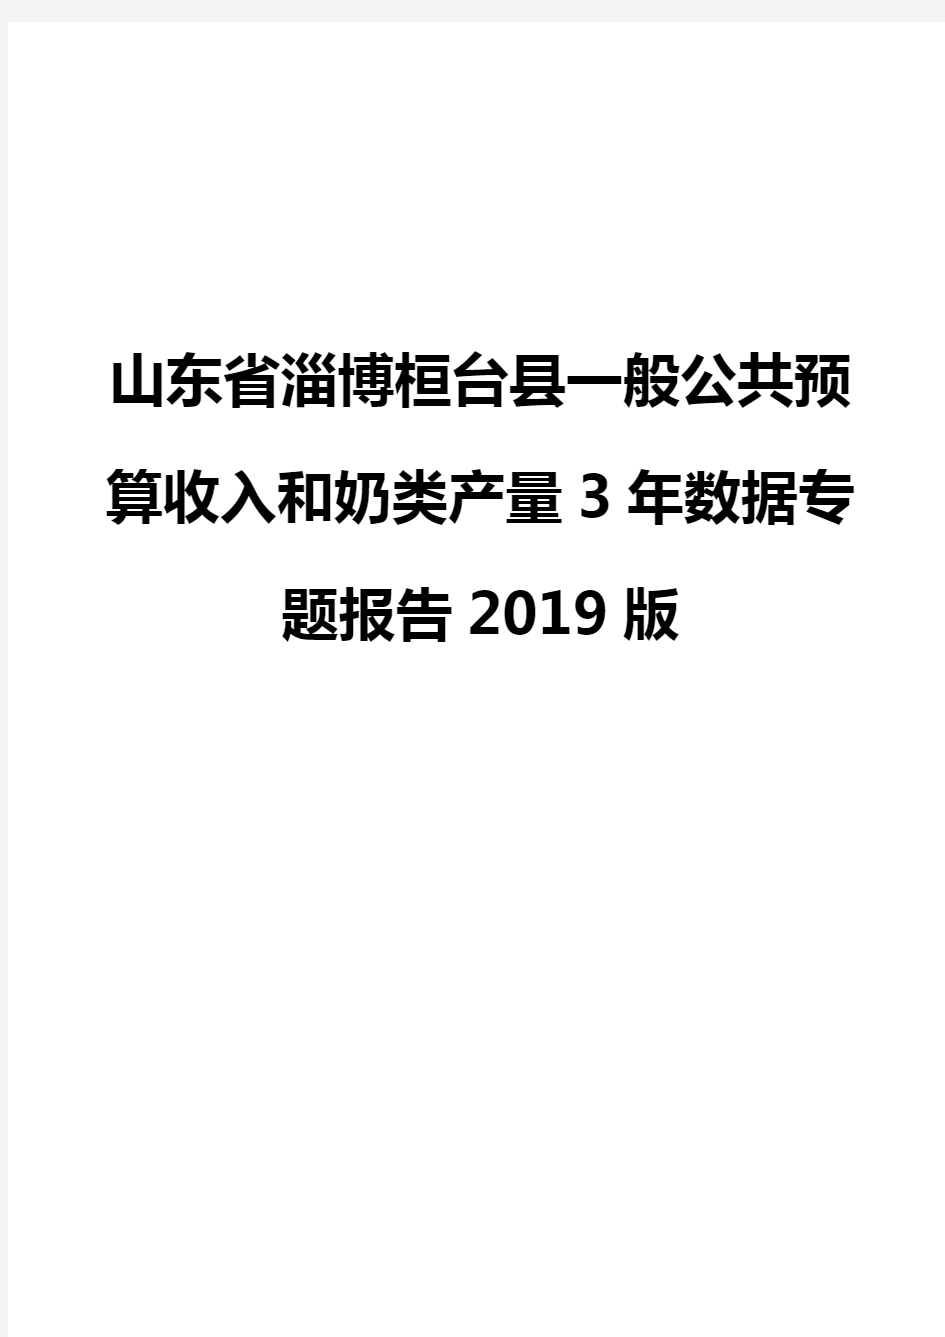 山东省淄博桓台县一般公共预算收入和奶类产量3年数据专题报告2019版